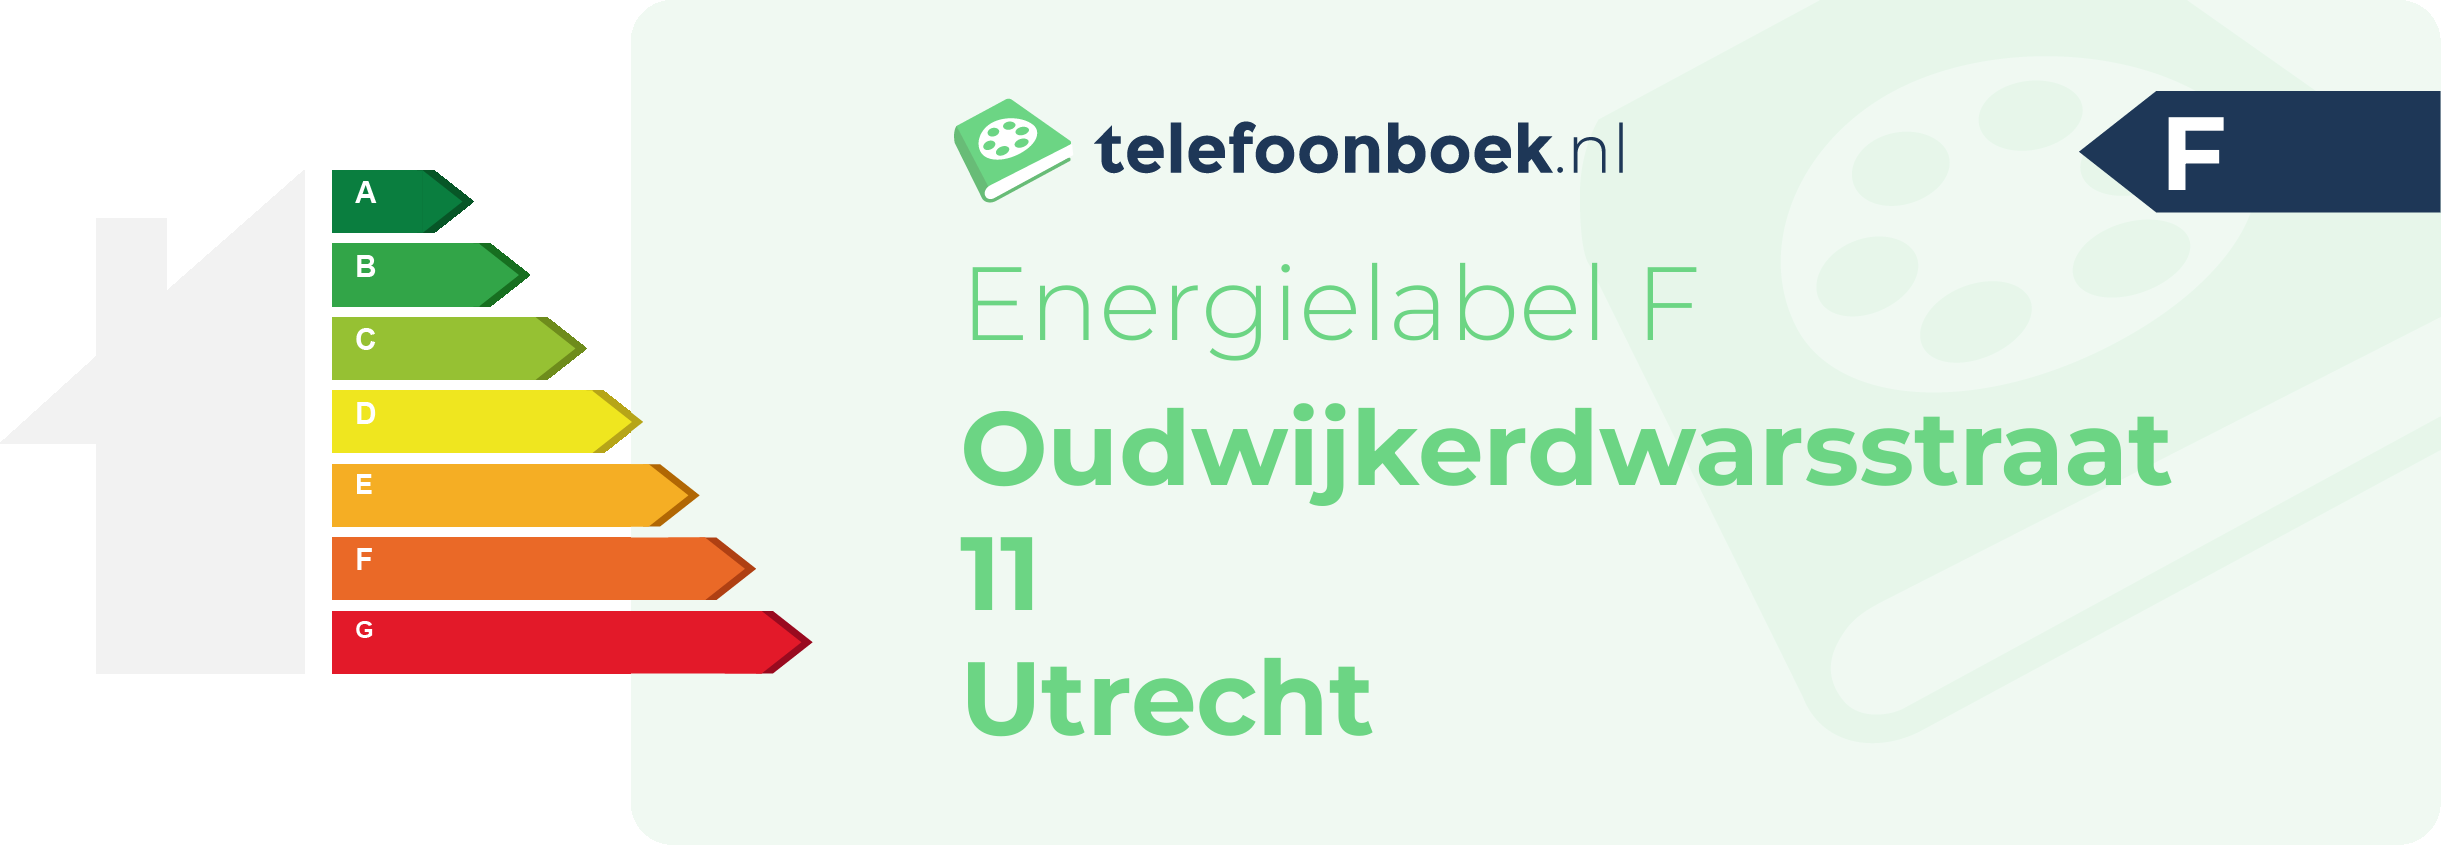 Energielabel Oudwijkerdwarsstraat 11 Utrecht